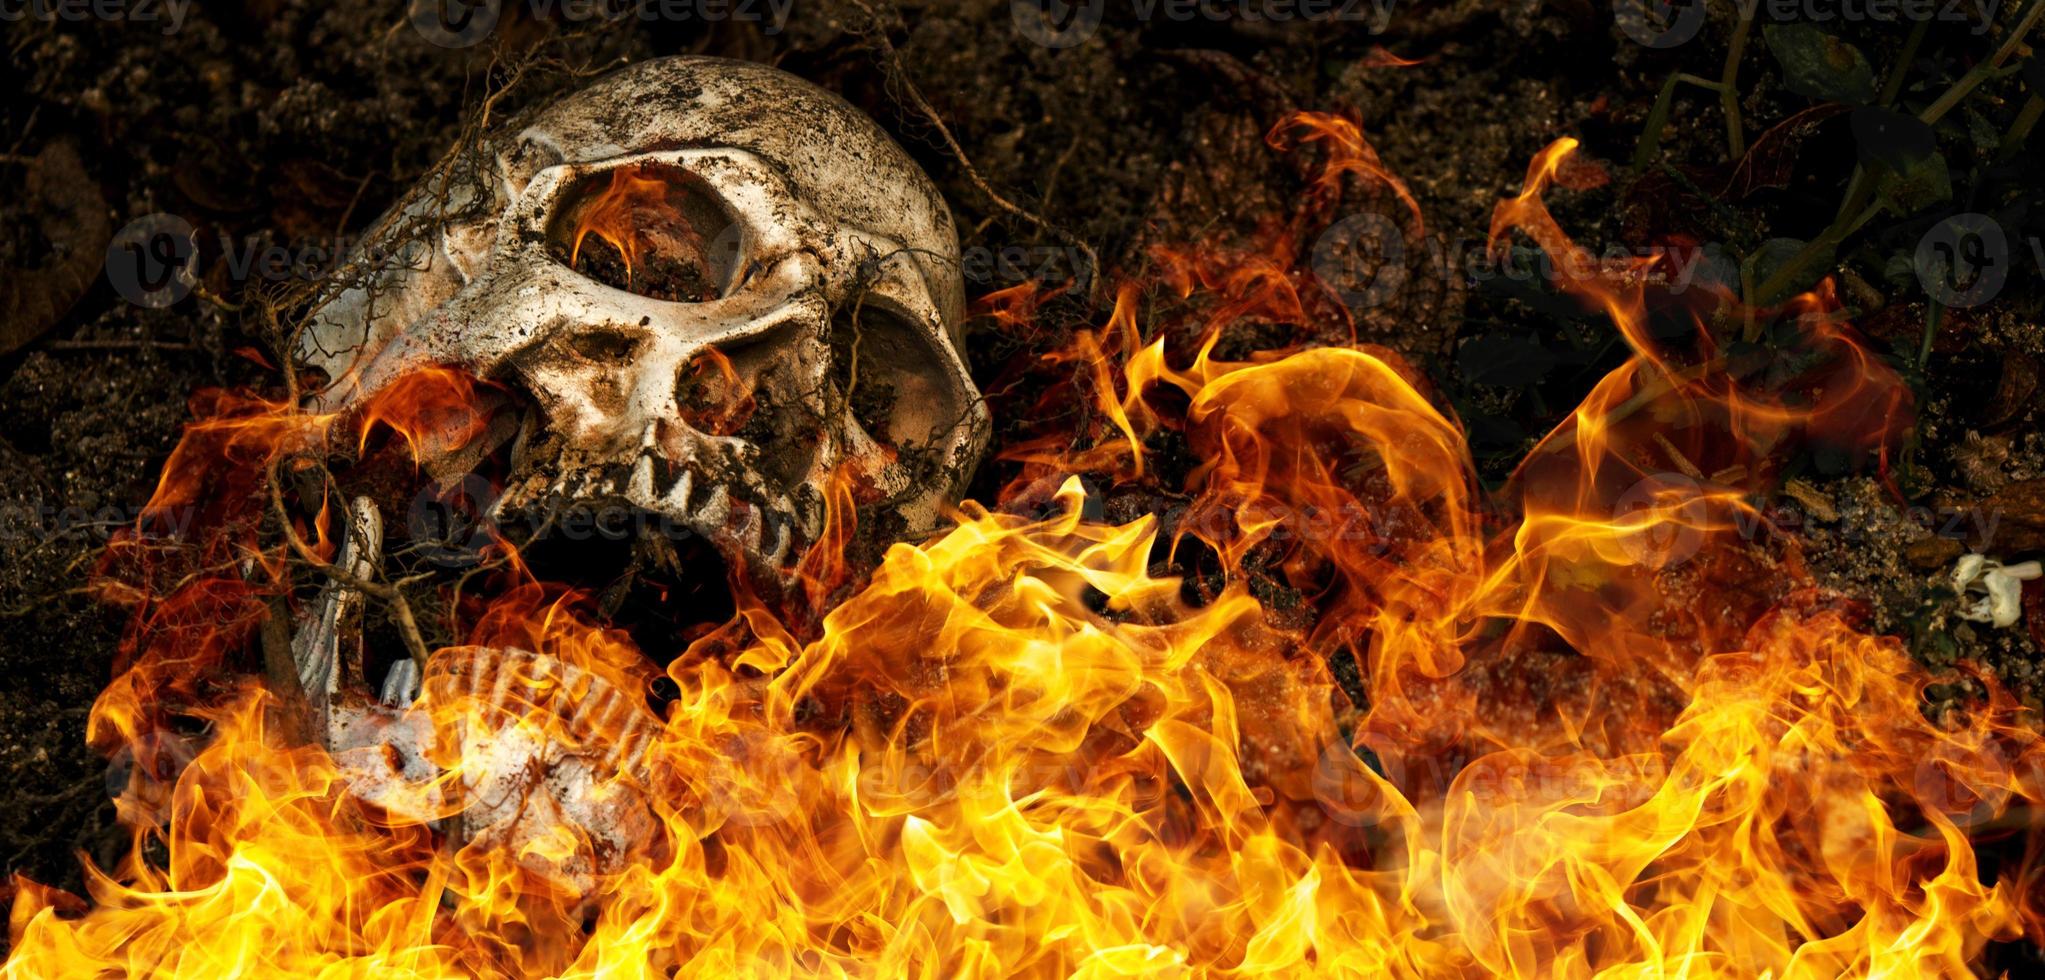 davanti al cranio umano sepolto in fiamme nel terreno con le radici dell'albero sul lato. il cranio ha della sporcizia attaccata al cranio.concetto di morte e halloween foto